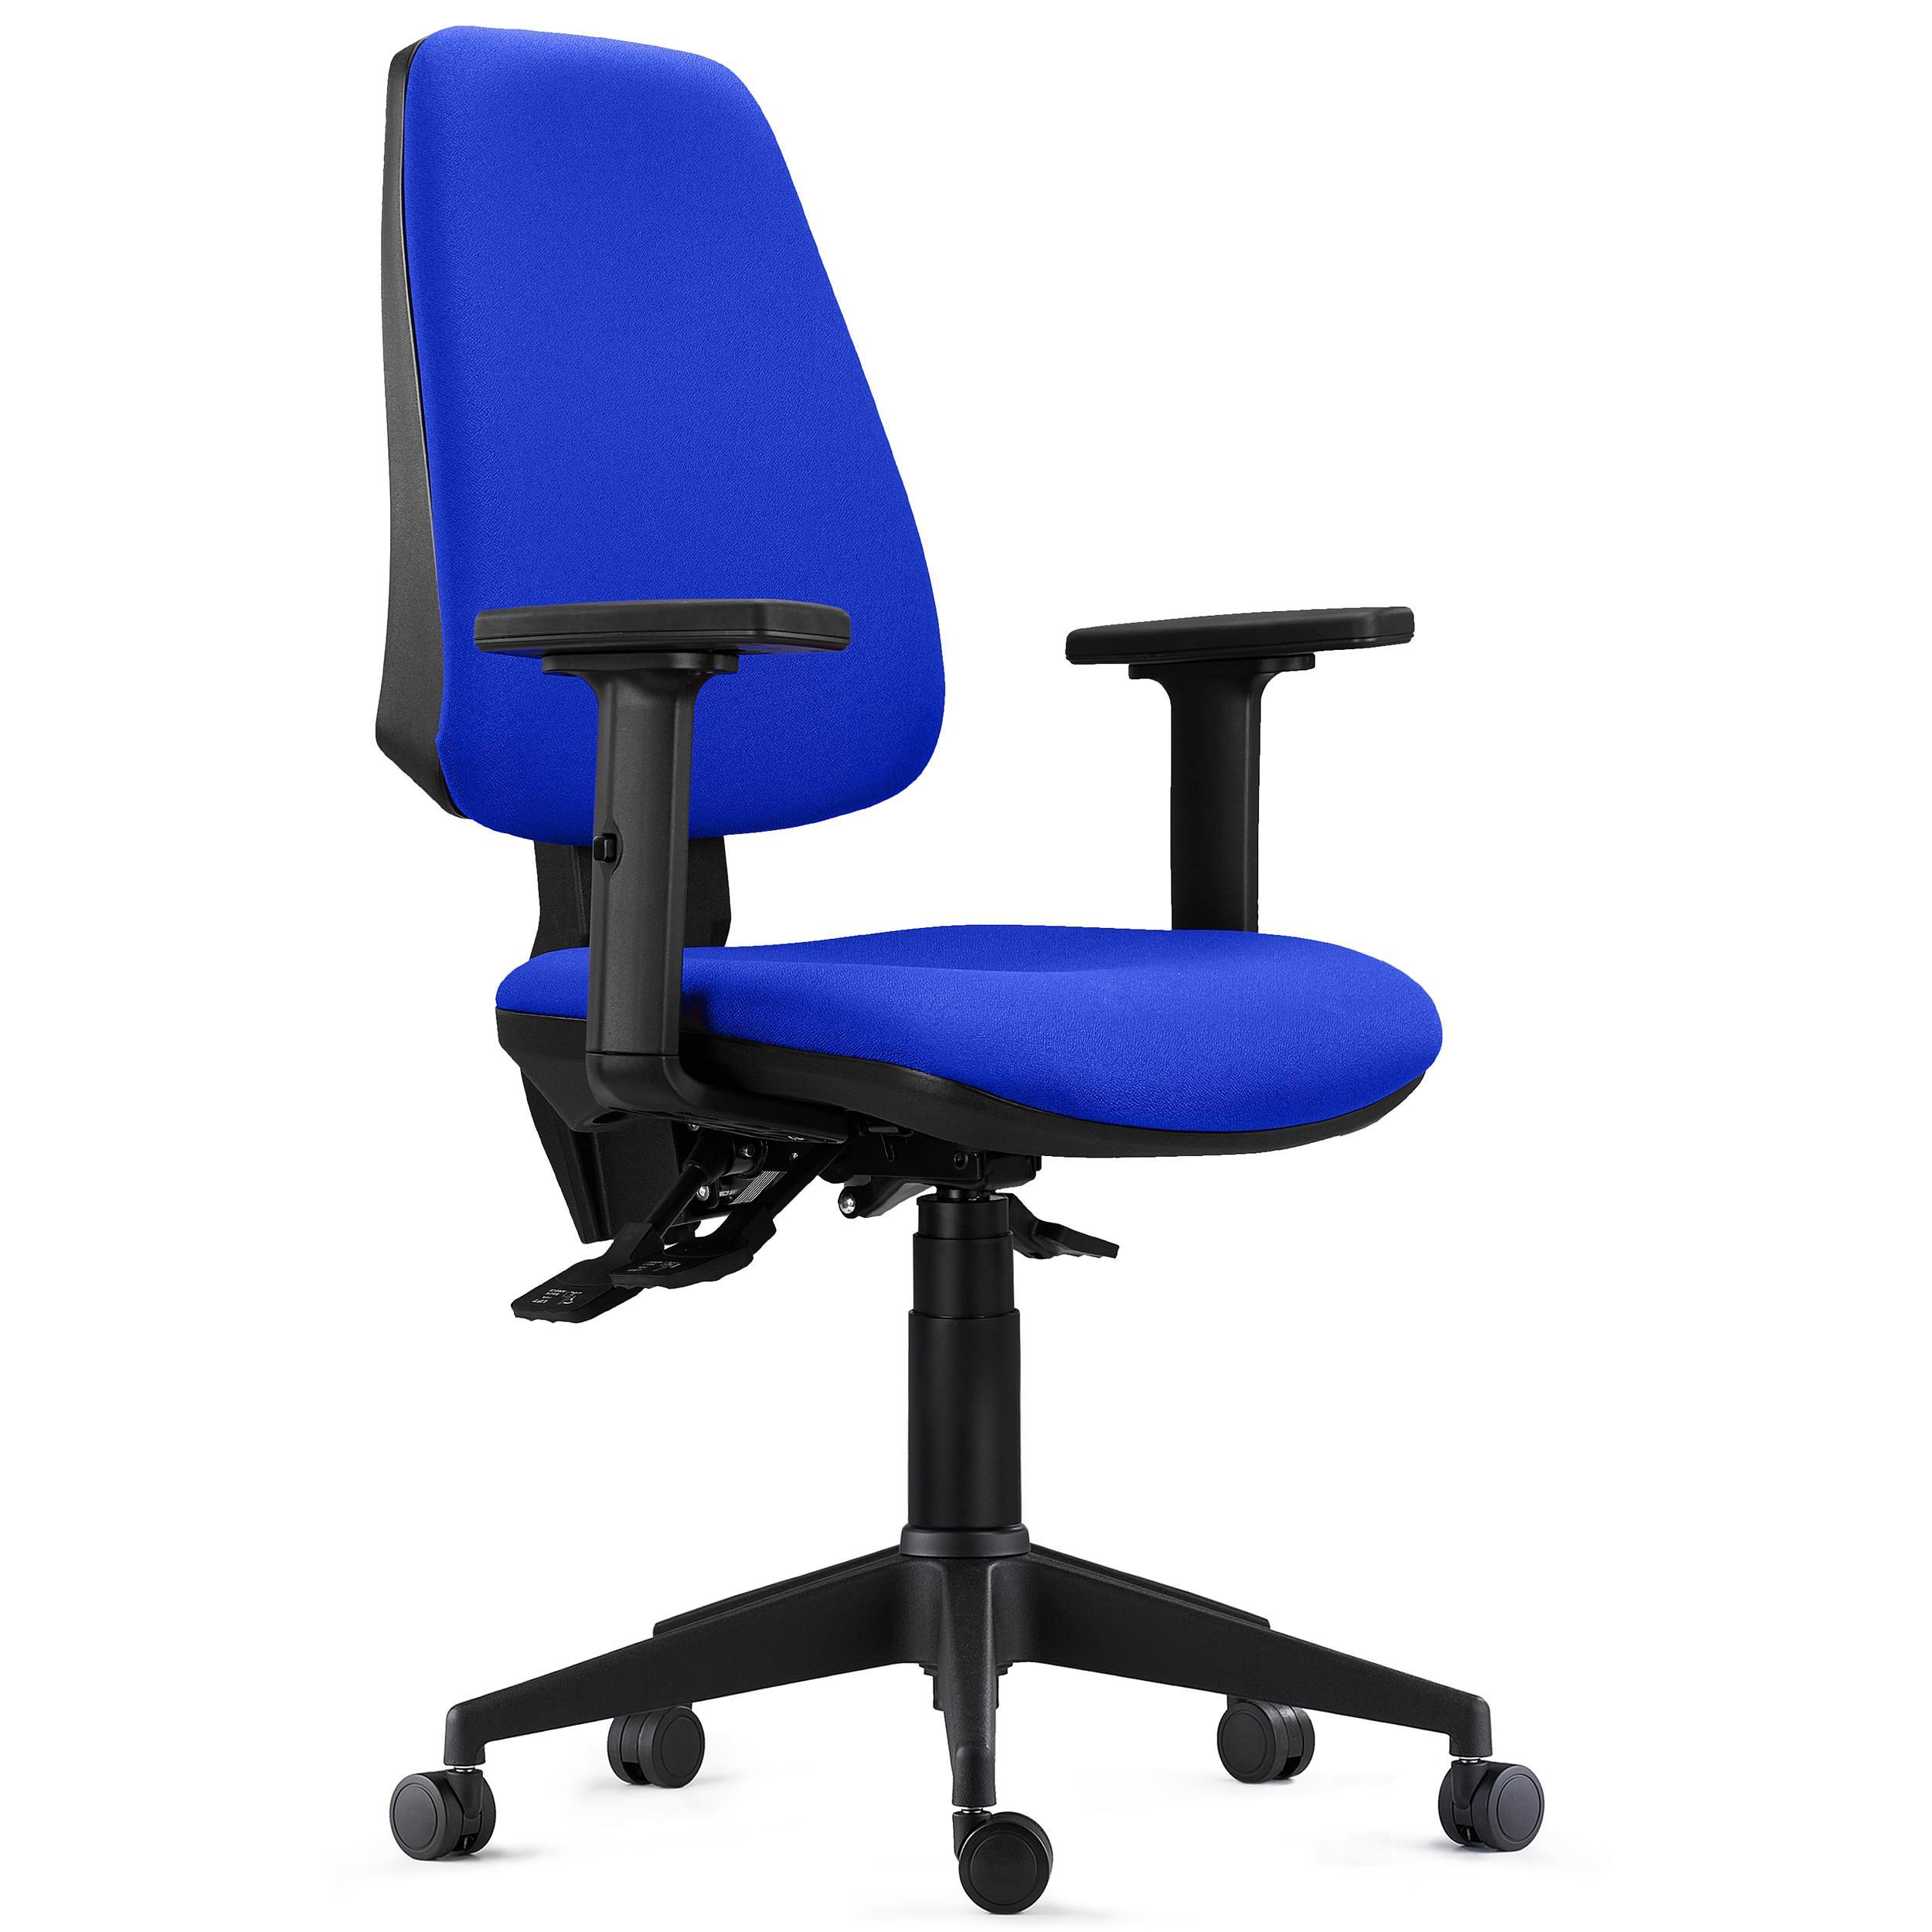 Chaise de Bureau Ergonomique INDIANA PRO, Usage Intensif 8H, avec Accoudoirs Ajustables 2D, en Tissu Bleu